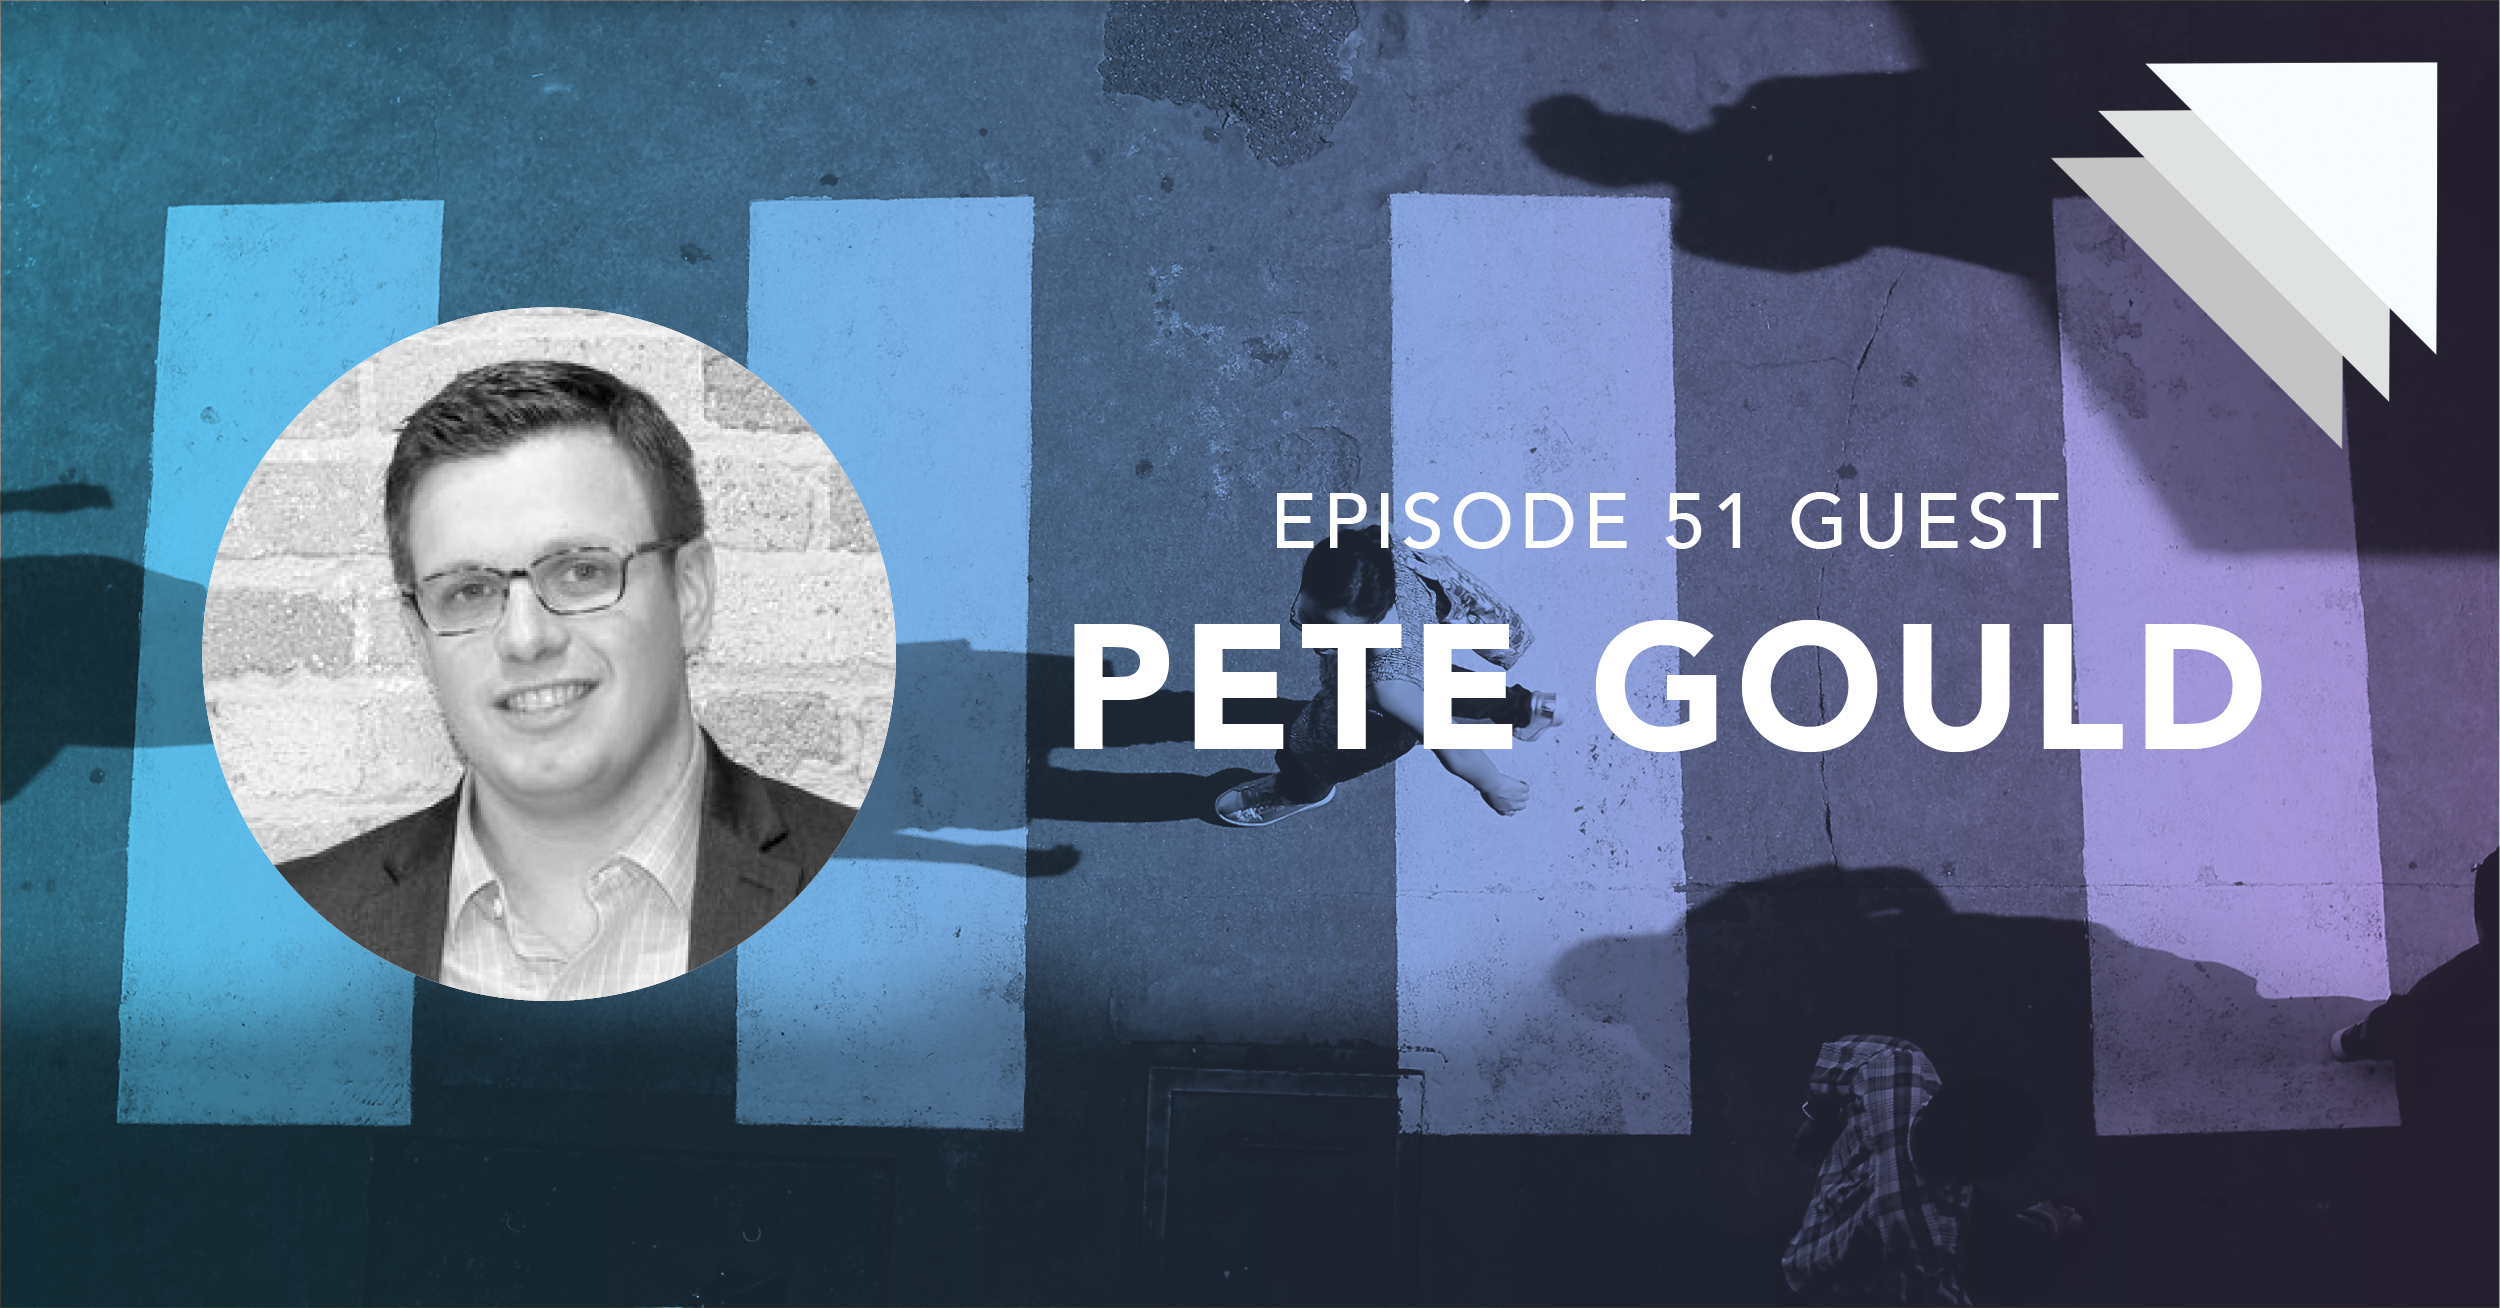 Episode 51 guest Pete Gould